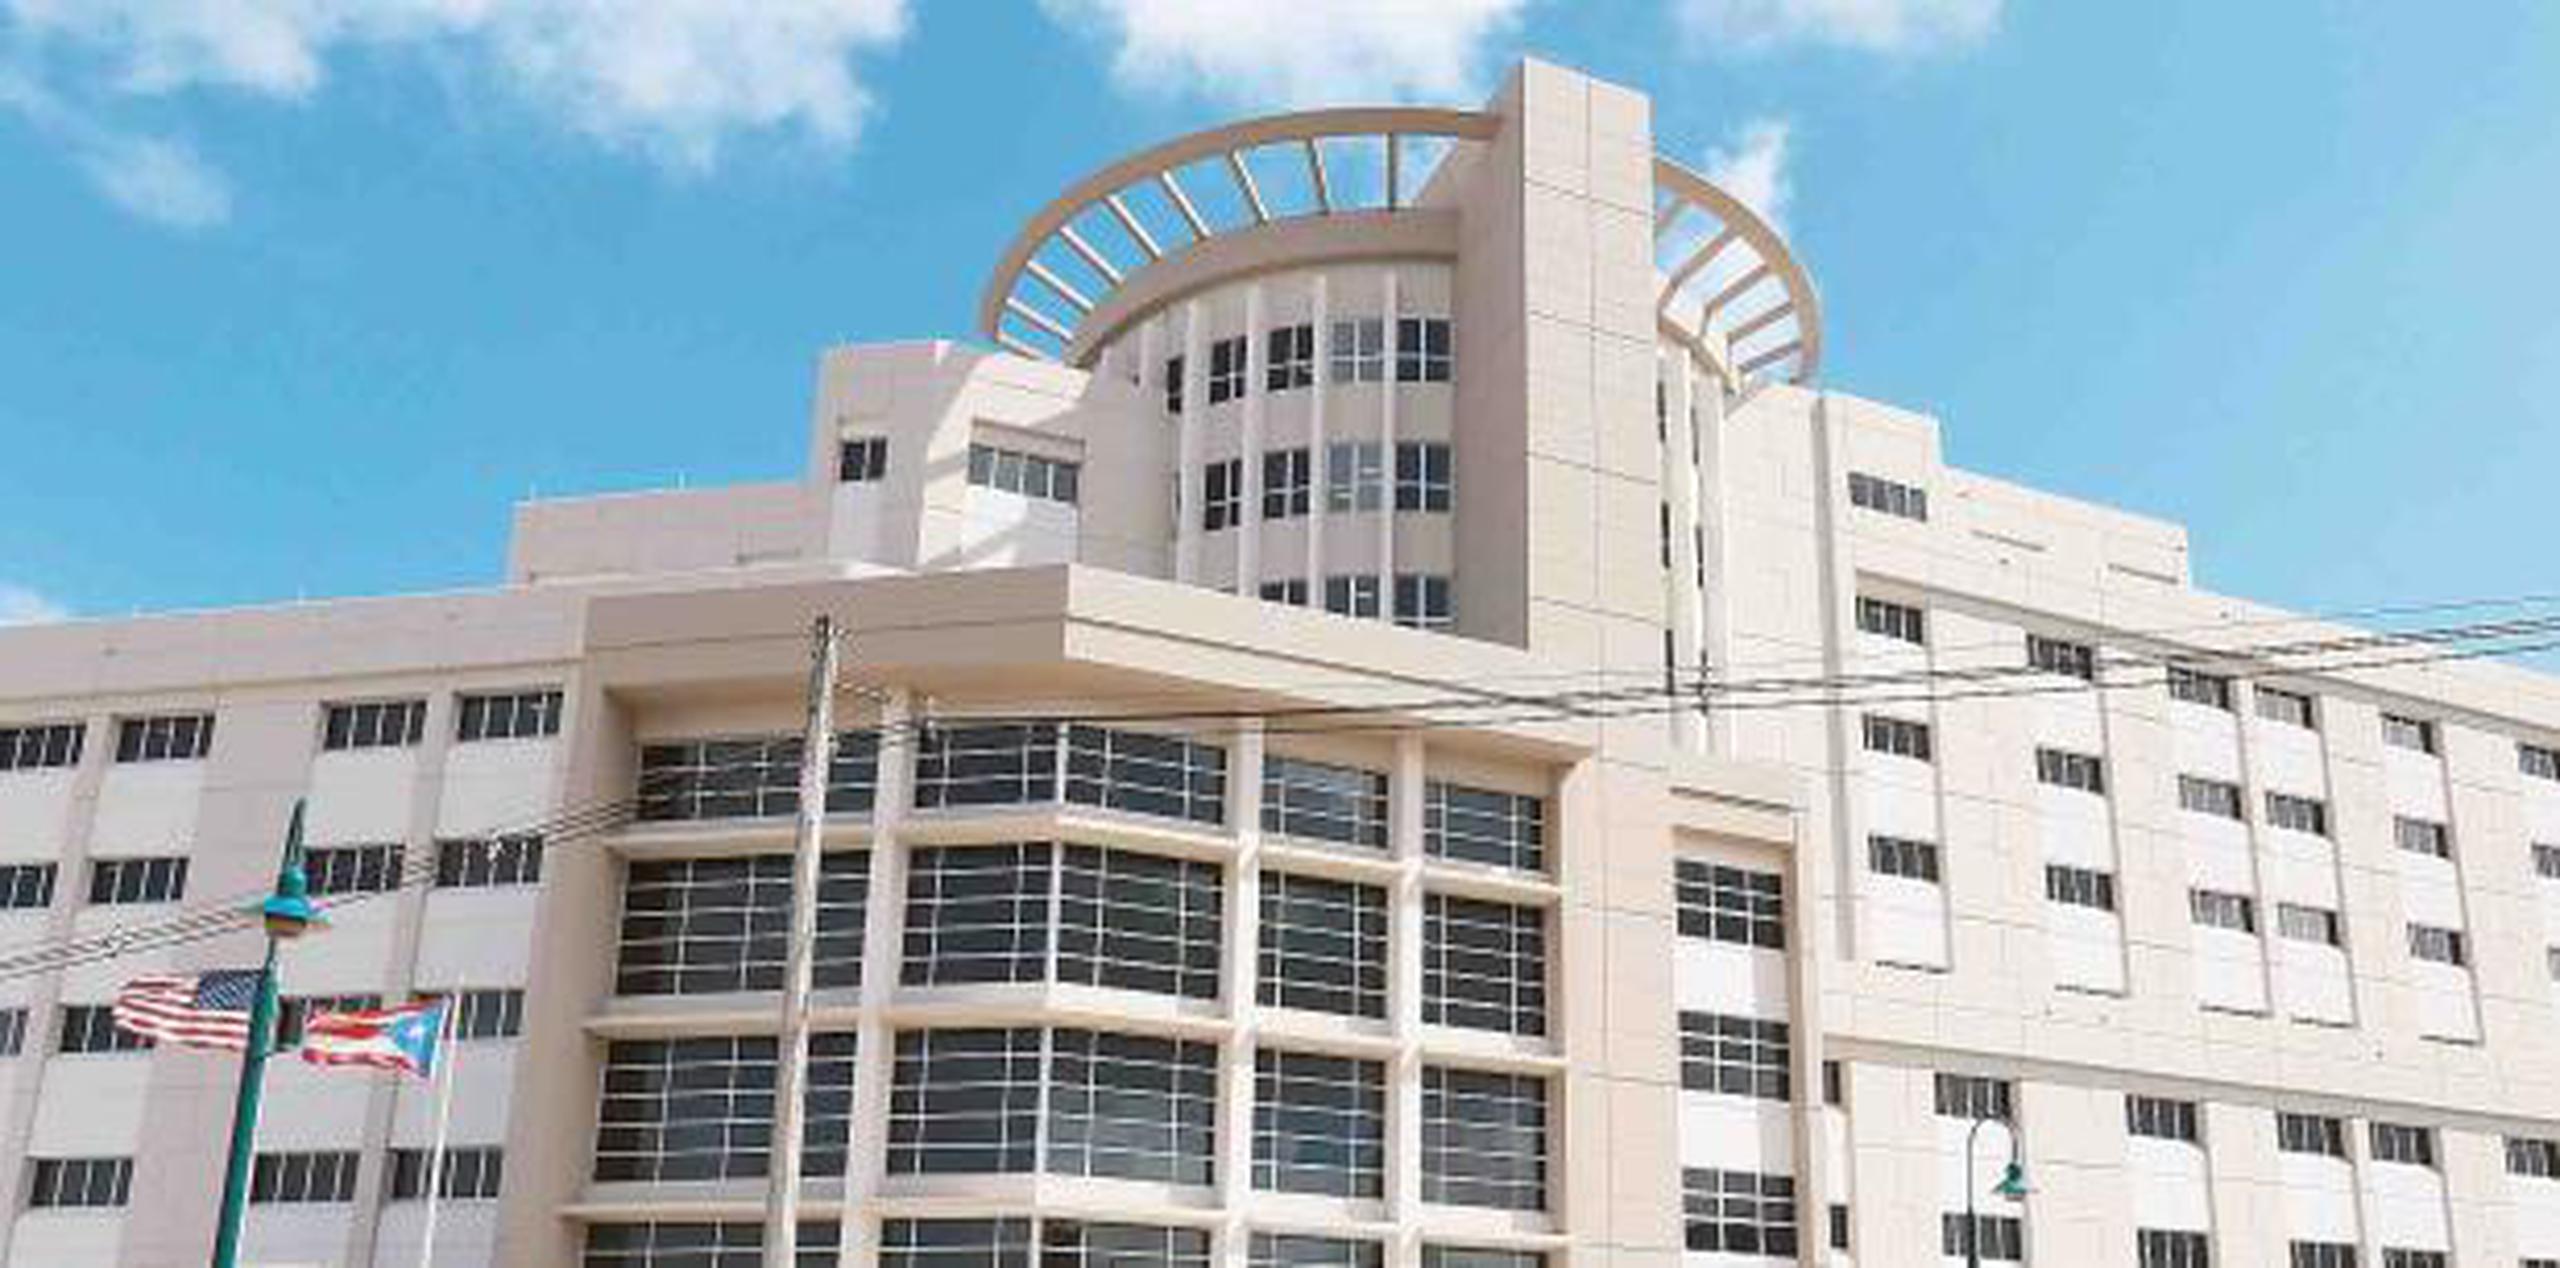 Según la Oficina del Contralor, la decisión de la OAT de construir un edificio para las instalaciones del Centro Judicial de Caguas aumentó los gastos de la Región Judicial de $747,399 a $17.6 millones anuales. (archivo)